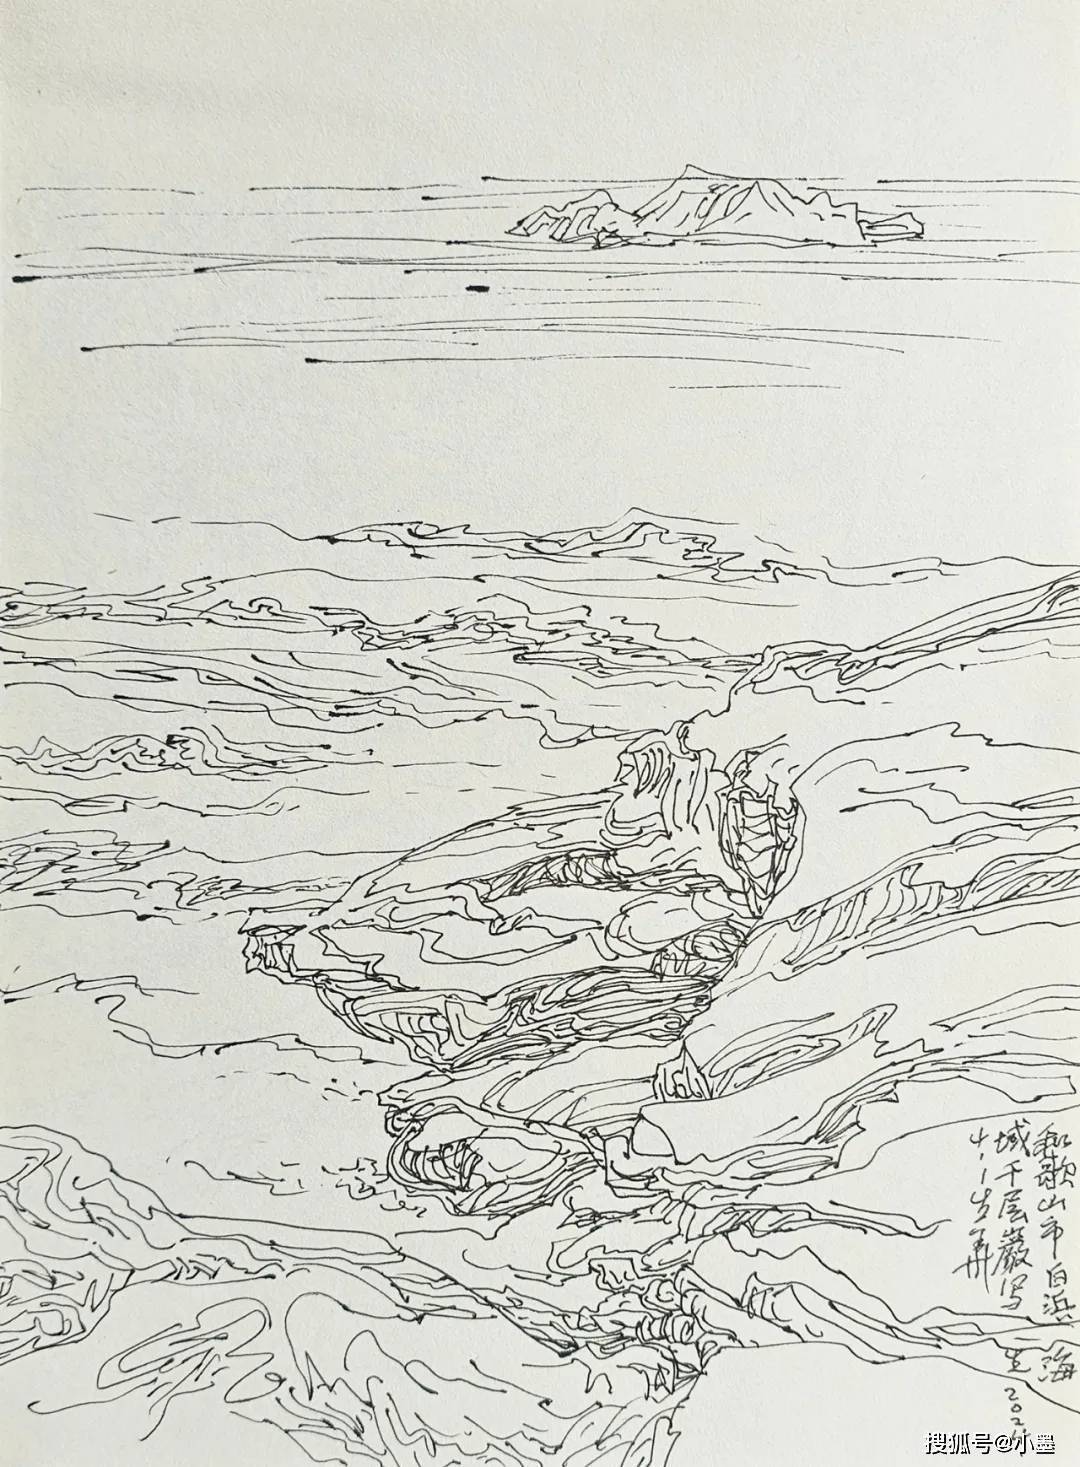 看大阪樱花飘落、和歌山白浜海浪舒卷……跟画家徐生华赴一场文艺之旅